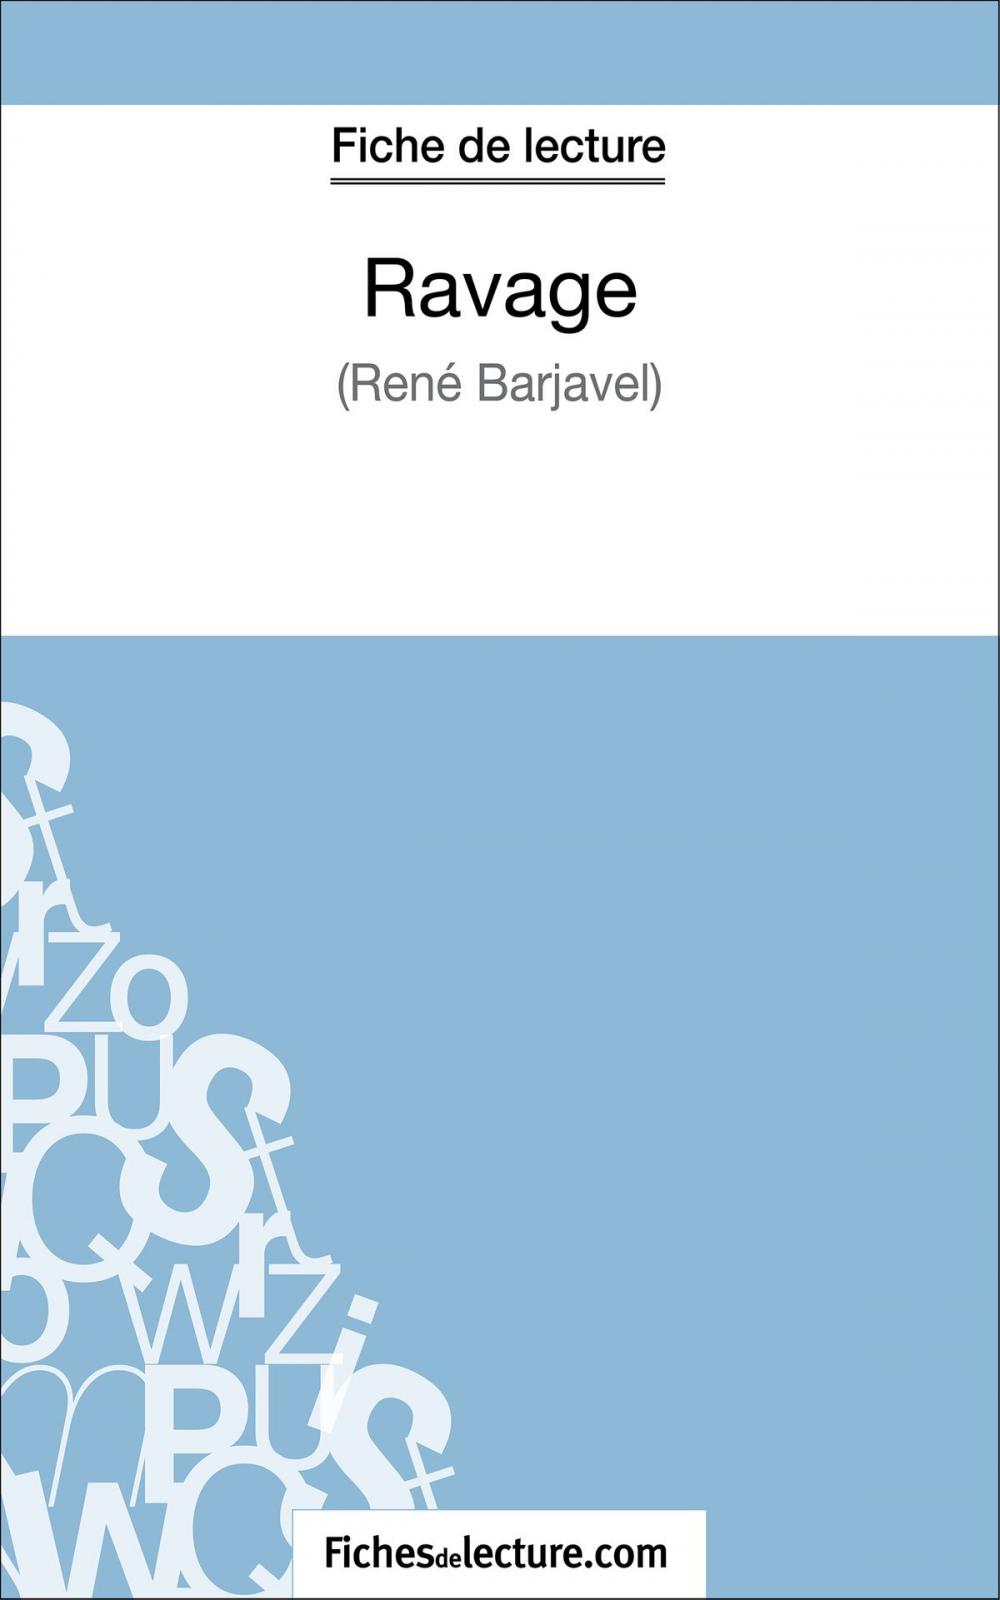 Big bigCover of Ravage de René Barjavel (Fiche de lecture)